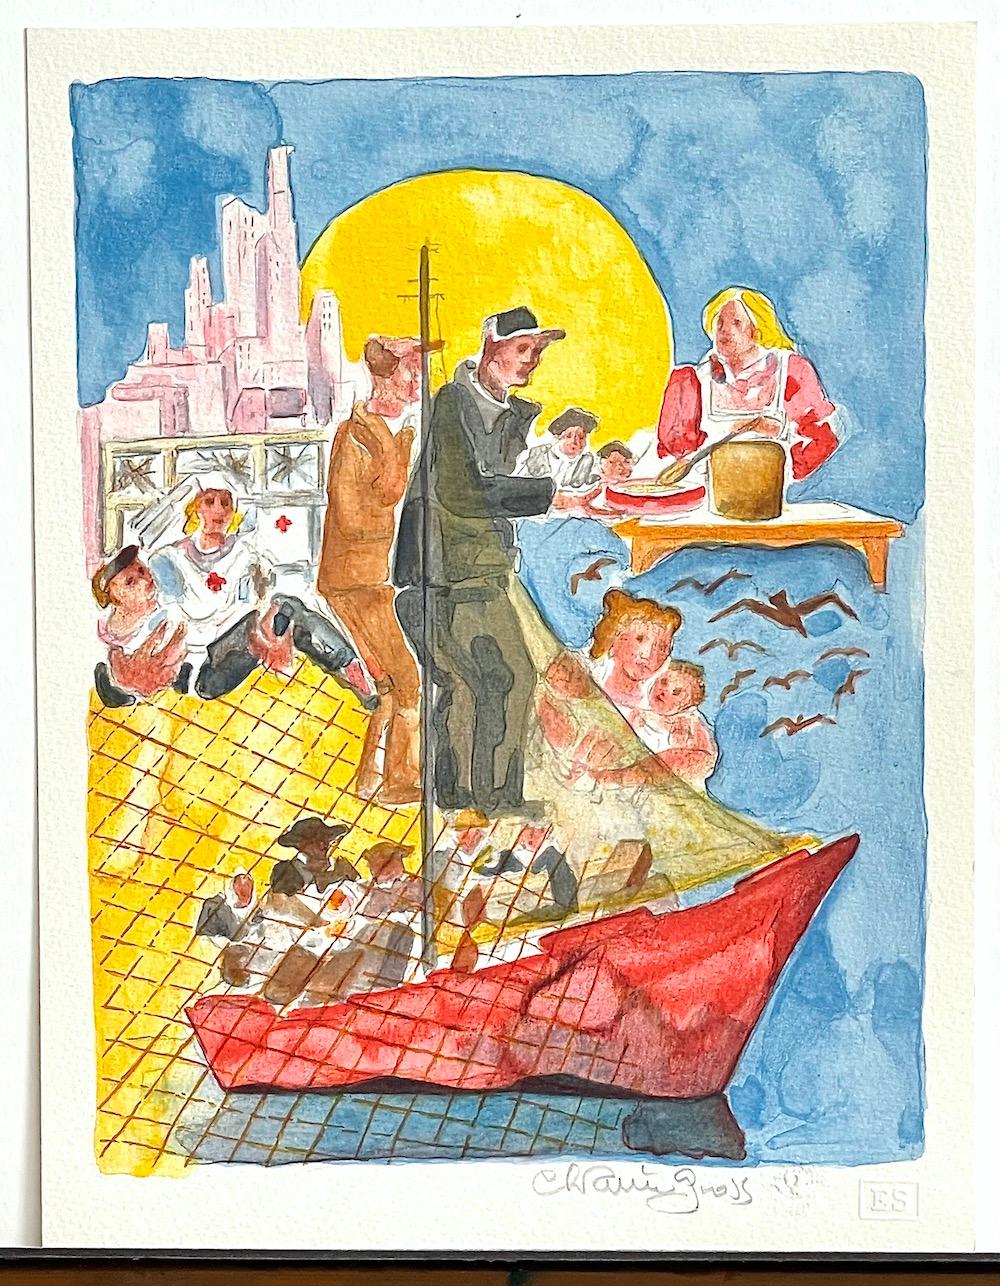 NEW IMMIGRANTS 1984 est une lithographie dessinée à la main par l'artiste/sculpteur américain Chaim Gross, imprimée en 11 couleurs sur du papier d'archives Arches. NEW IMMIGRANTS 1984 représente une image figurative de nouveaux immigrants arrivant